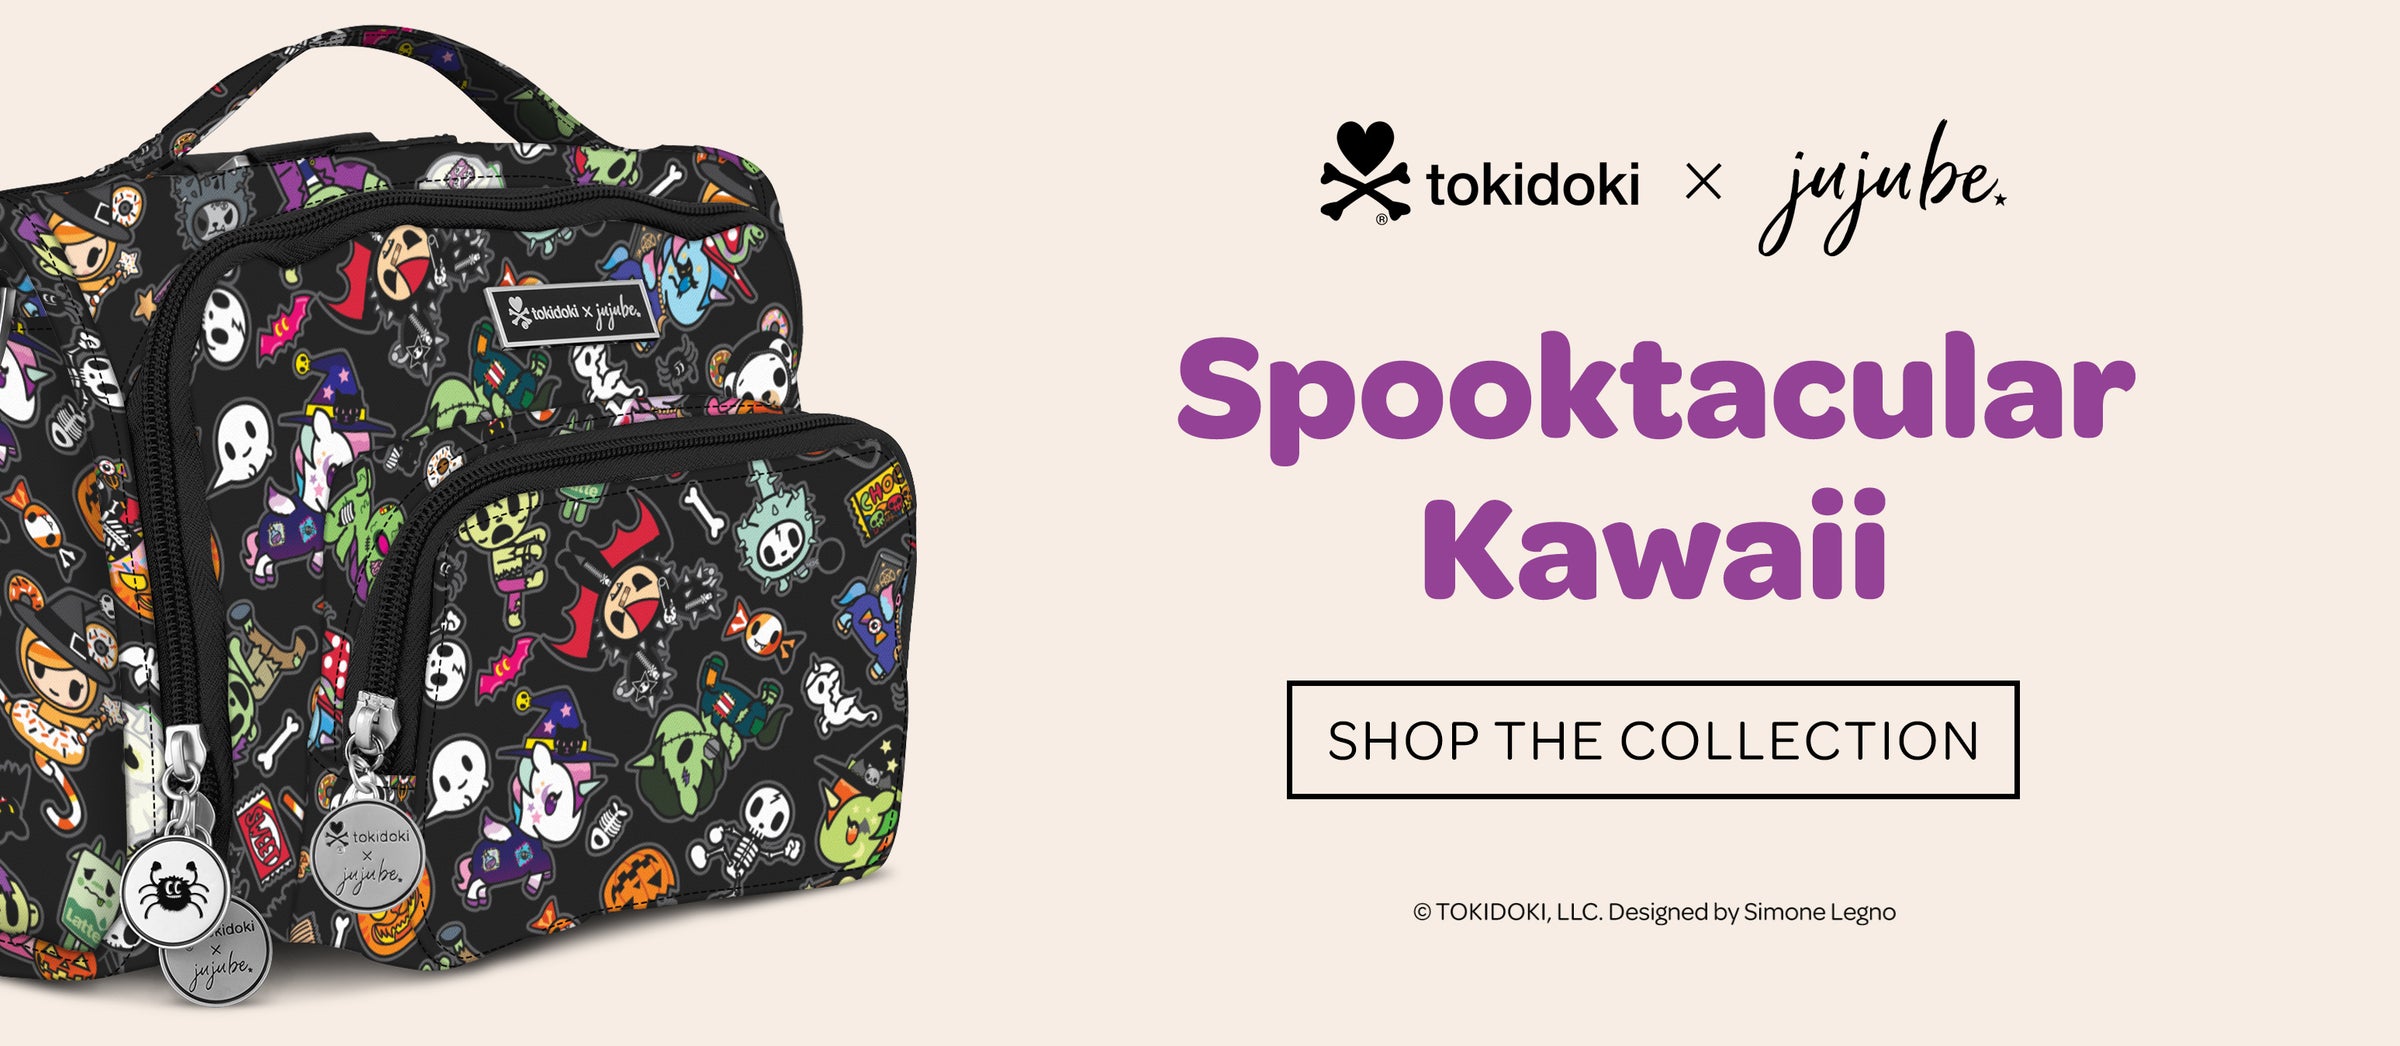 tokidoki Spooktacular Kawaii